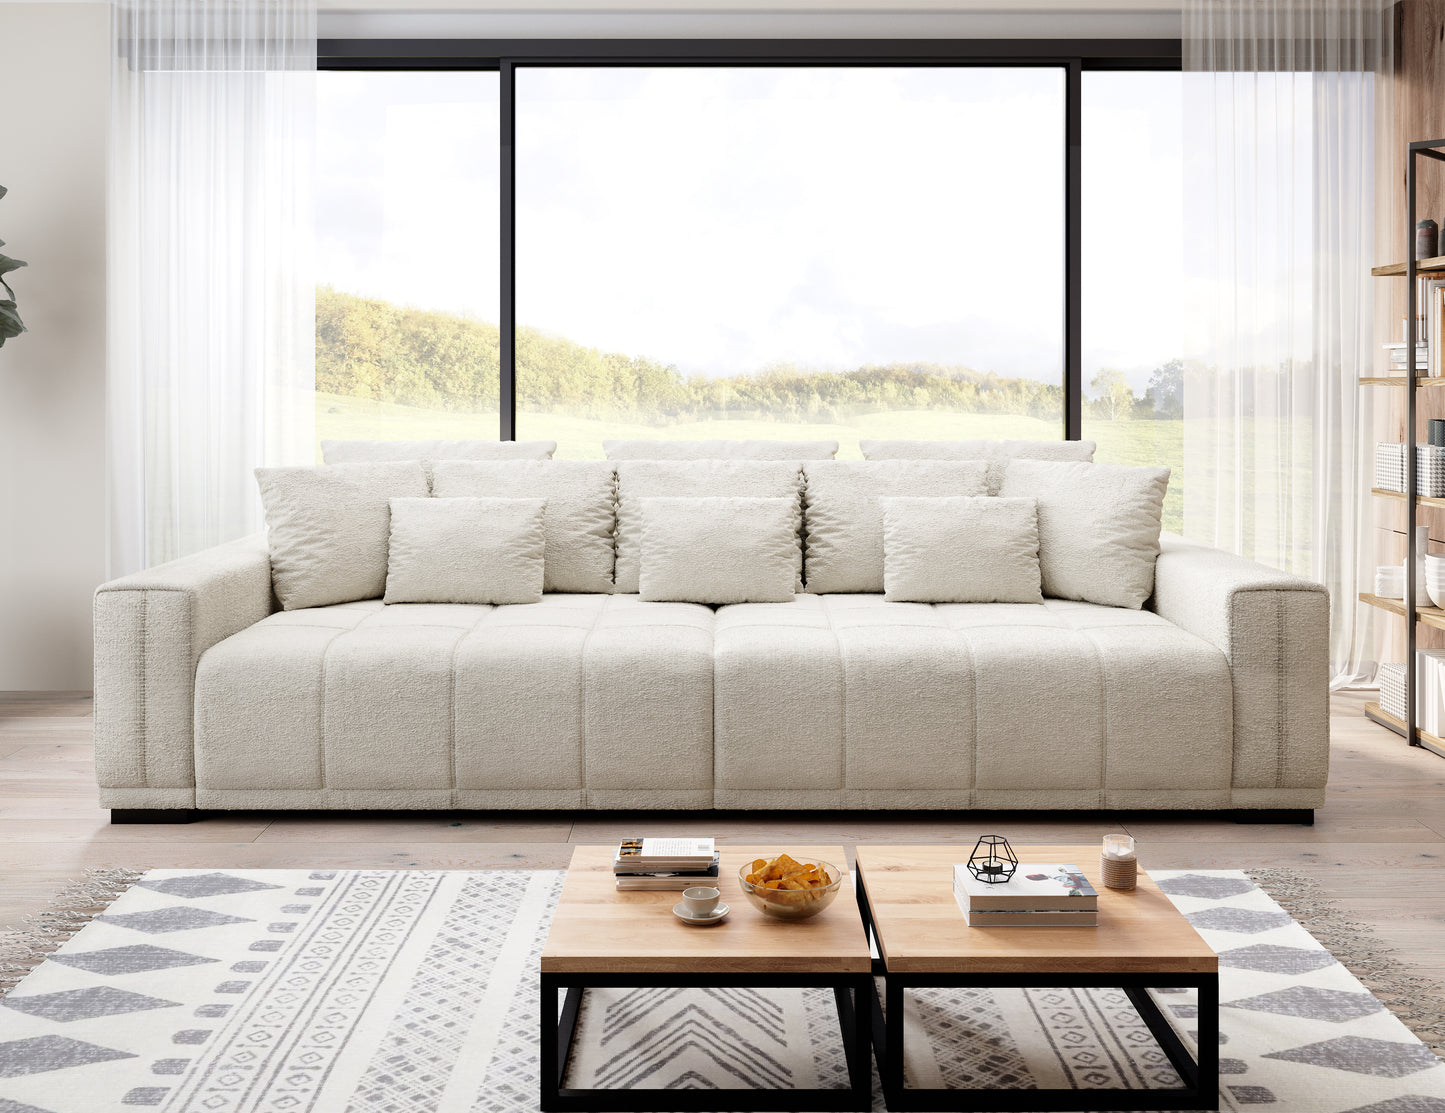 Duża jasna sofa kanapa MINDELO do spania 2 pojemniki w nowoczesnej aranżacji z drewnianymi akcentami.